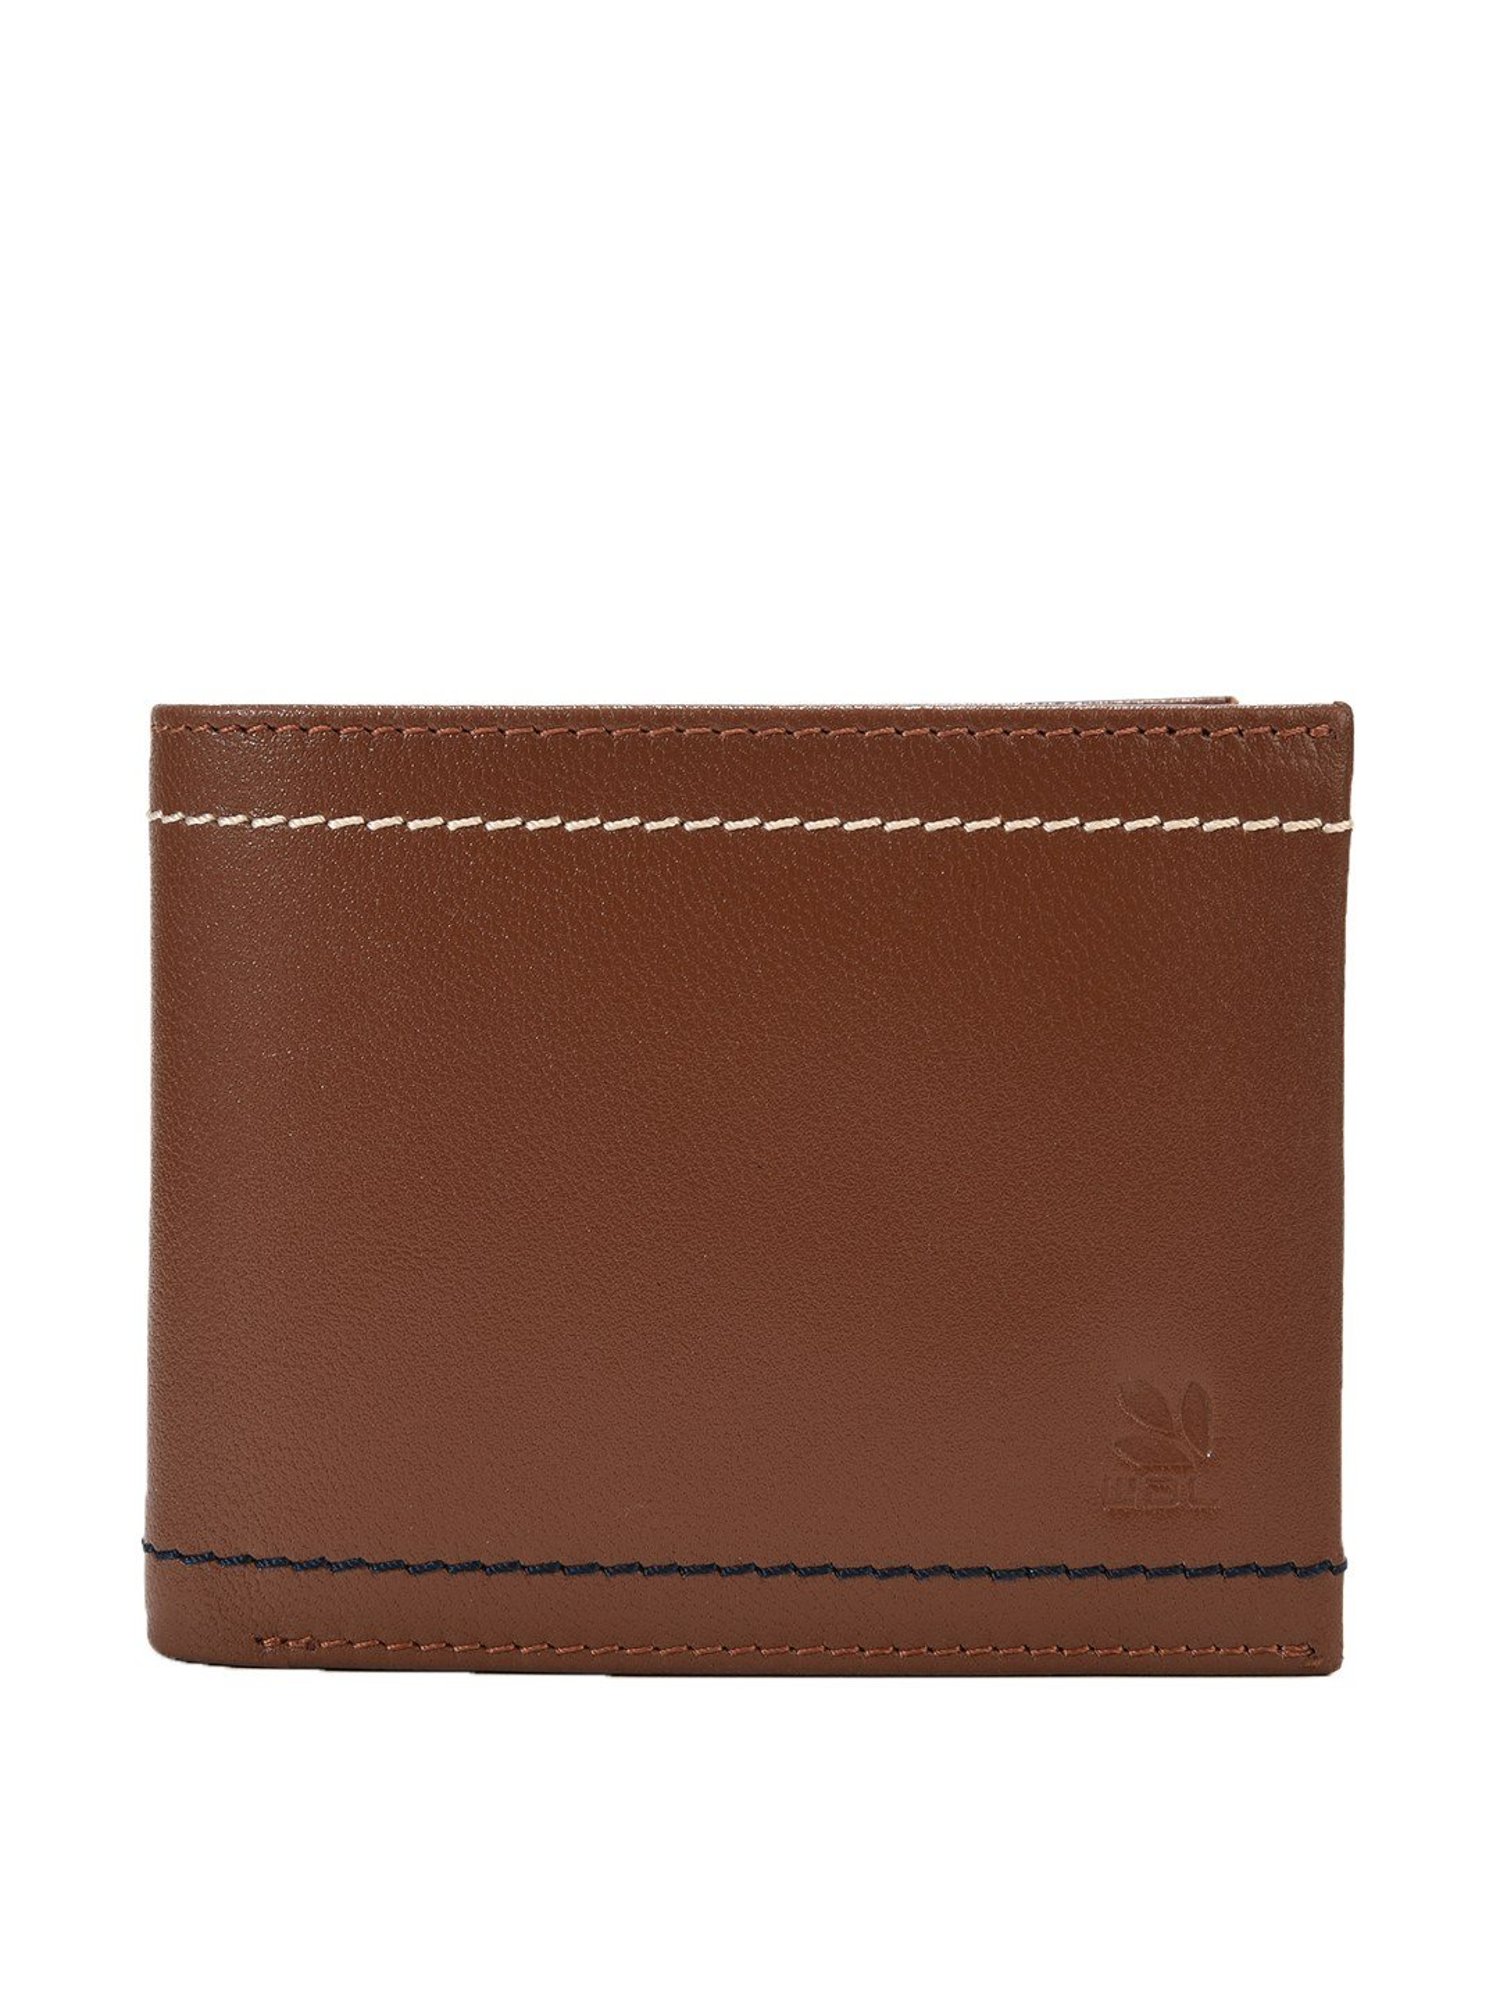 Cork Bi-Fold Wallet for Men | Woodland Brown | Obi